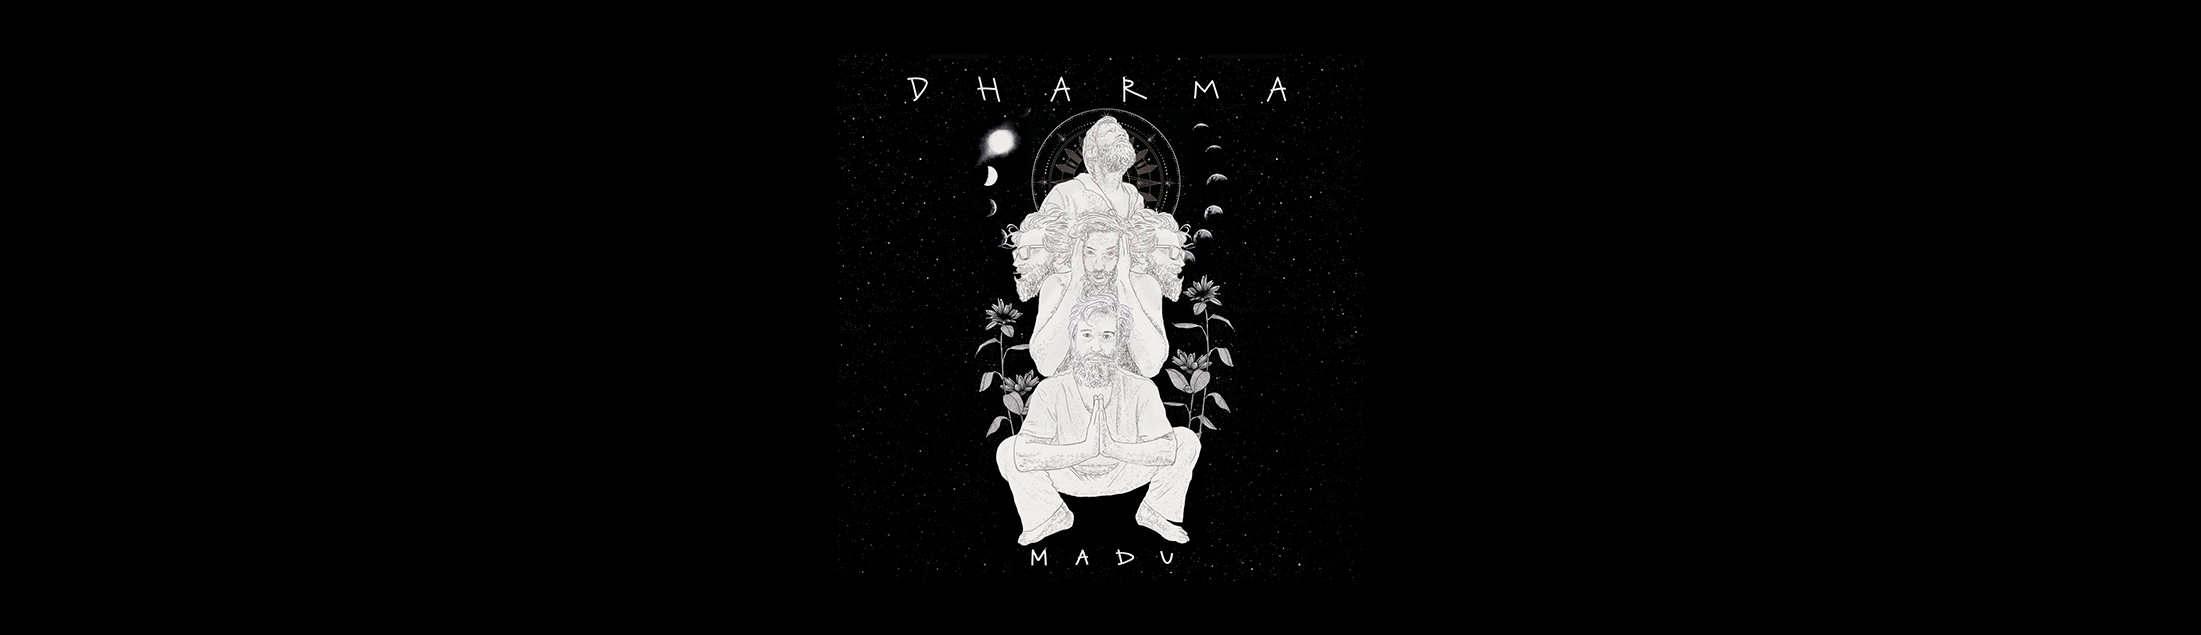 Madu Madureira lança 'Dharma', álbum que reúne convidados de peso da MPB